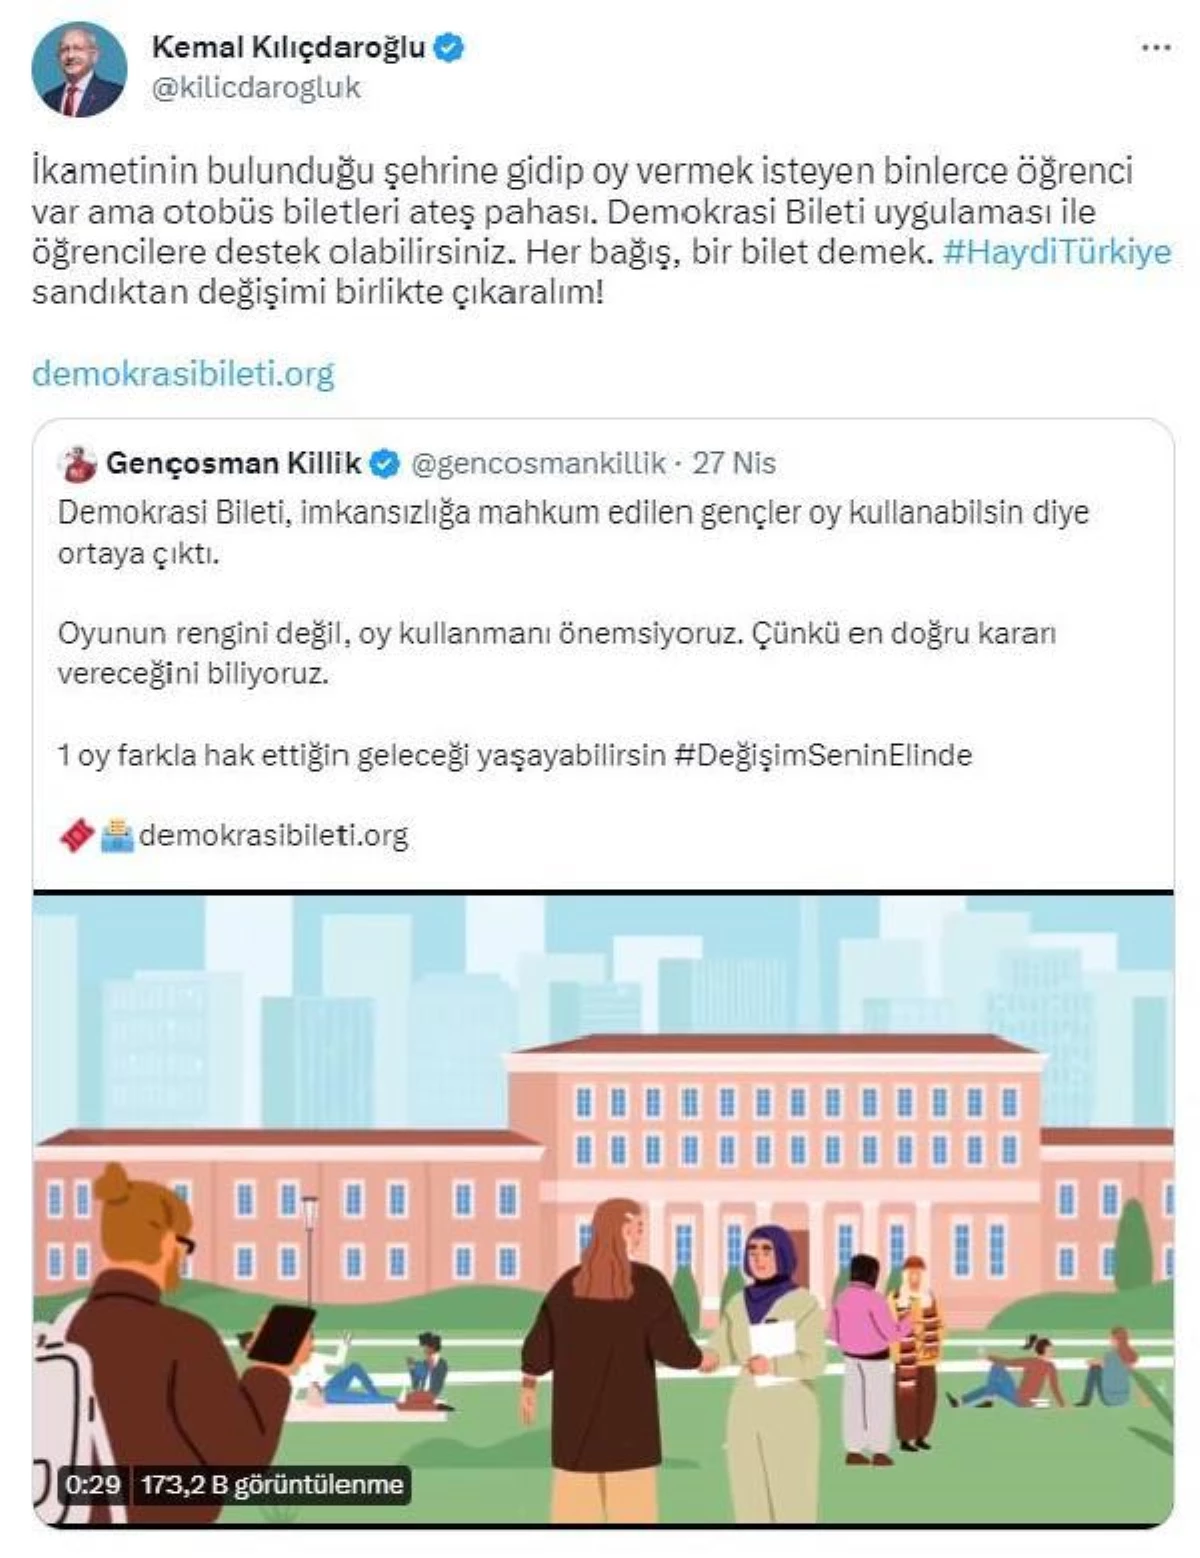 Kılıçdaroğlu 'Demokrasi Bileti' uygulamasına takviye daveti yaptı